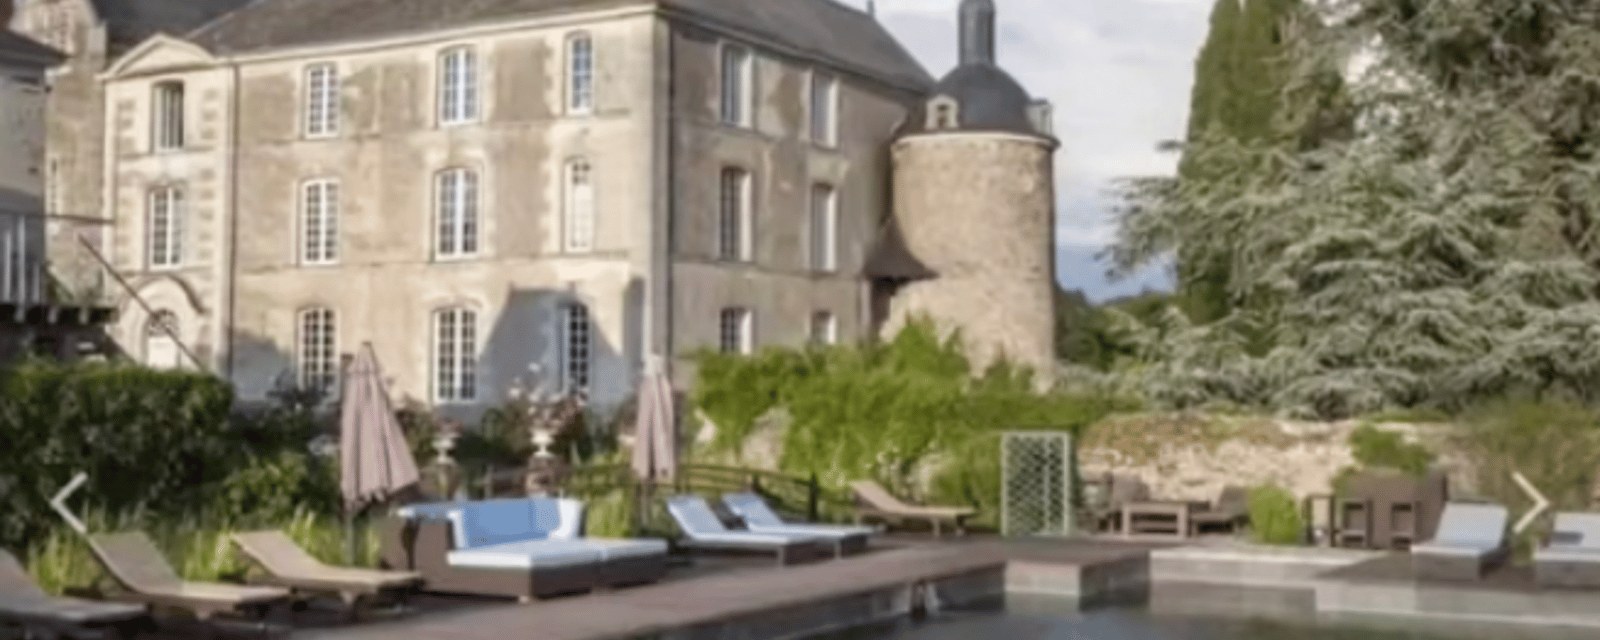 Un château en France est à vendre au même prix qu'une maison jumelée ici.